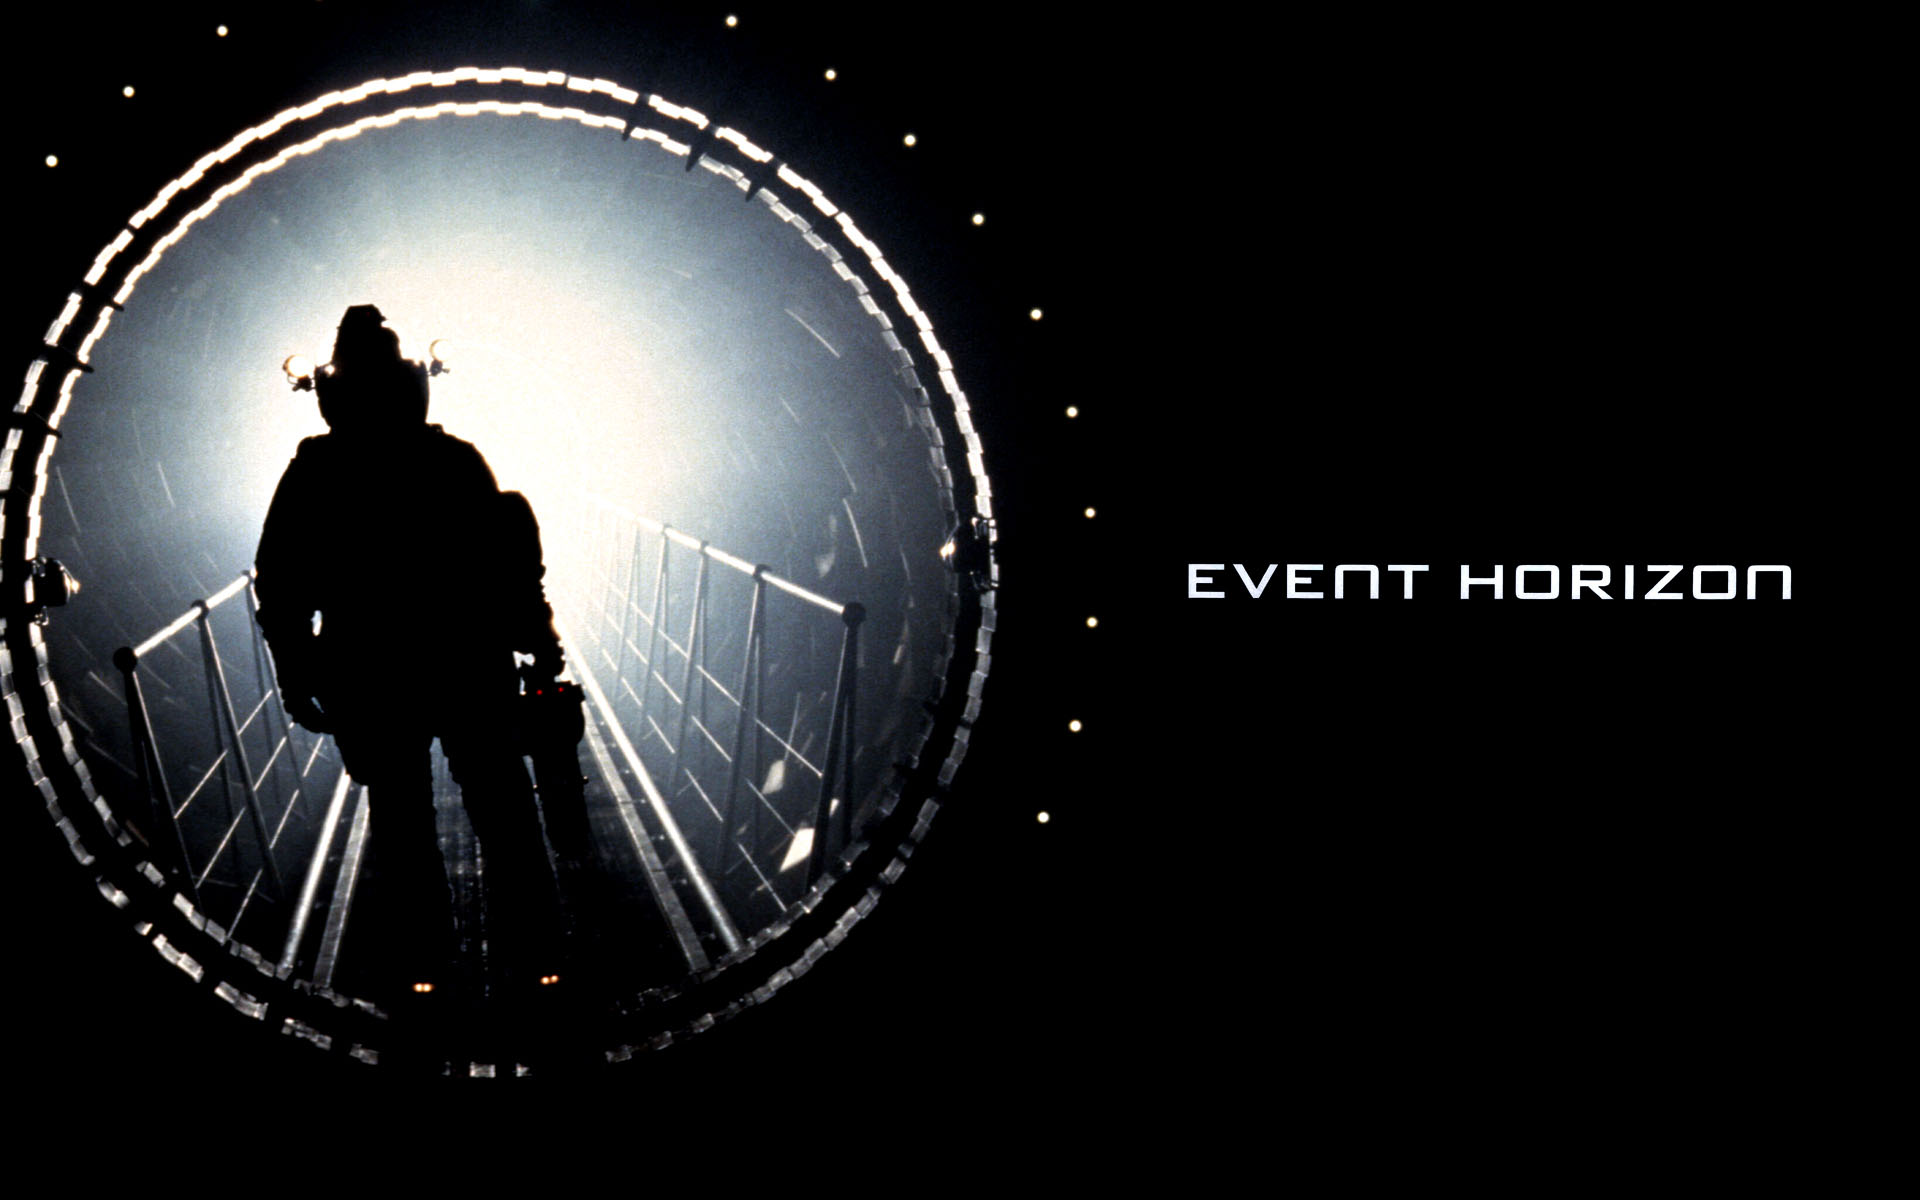 Event Horizon Image Crazy Gallery